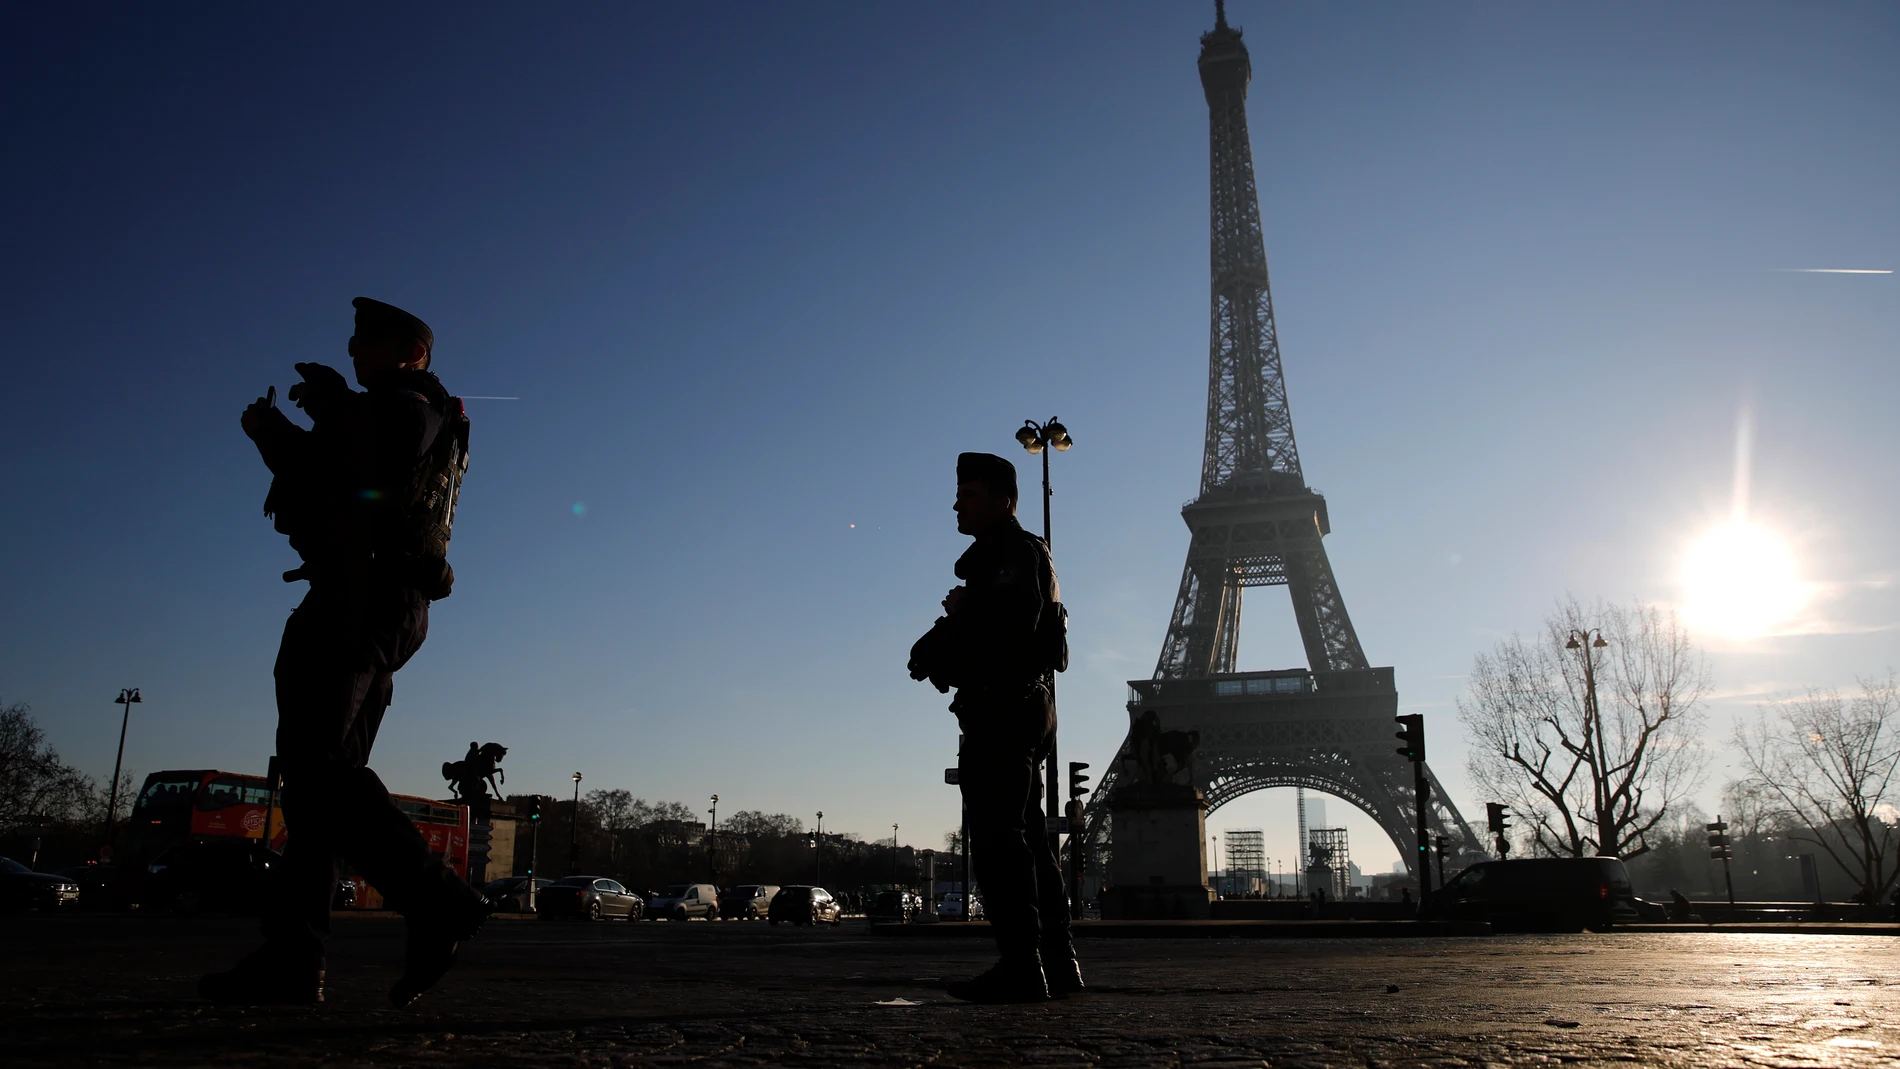 La seguridad será estricta en toda Francia en la víspera de Año Nuevo, con 90,000 agentes de la ley que se desplegarán en todo el país